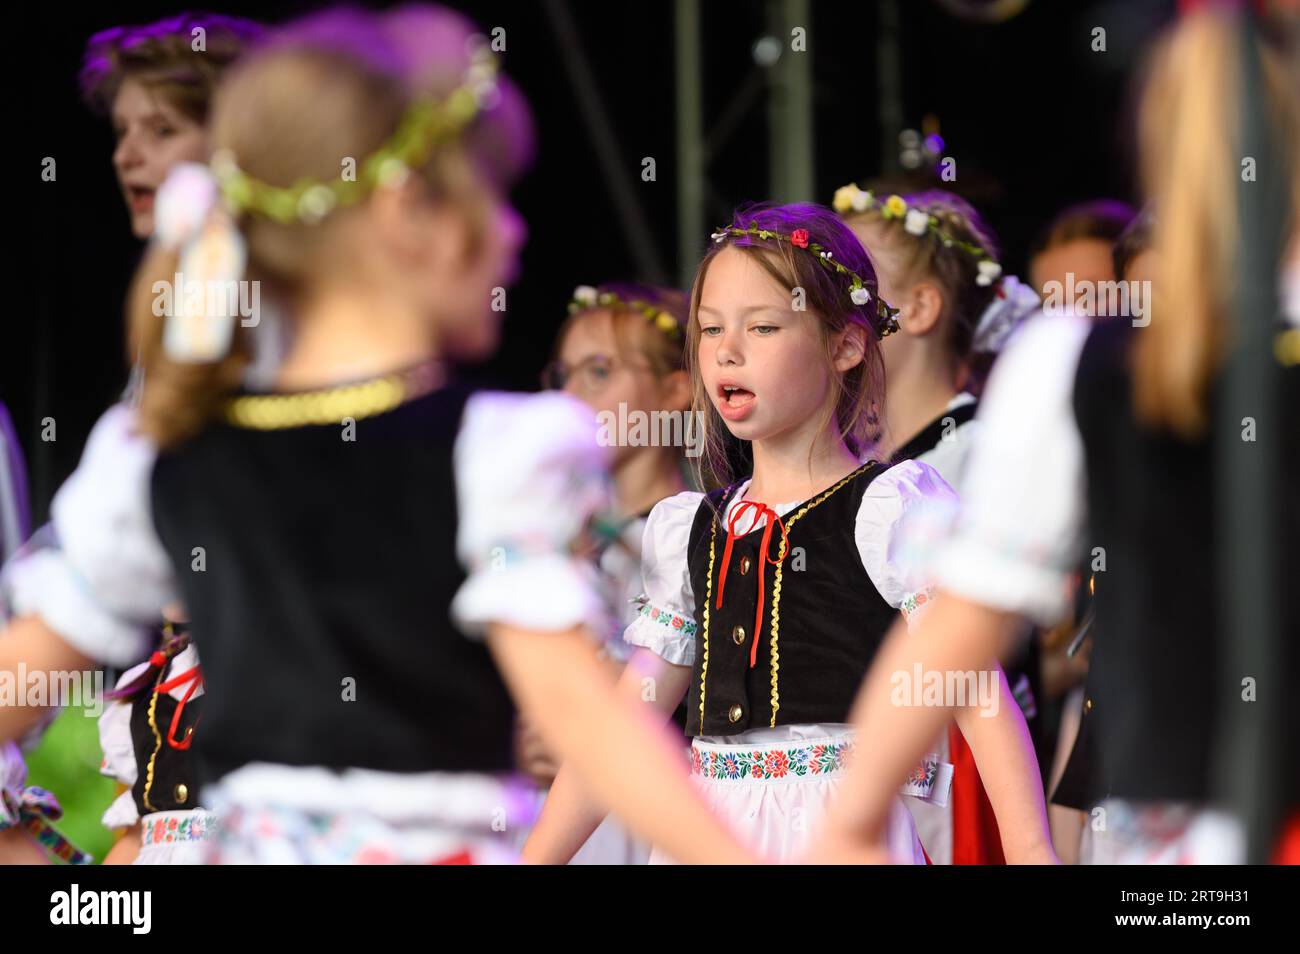 Des enfants tchèques et slovaques interprétant des chants et danses tchèques et slovaques traditionnels lors d'un événement au Luxembourg. Banque D'Images